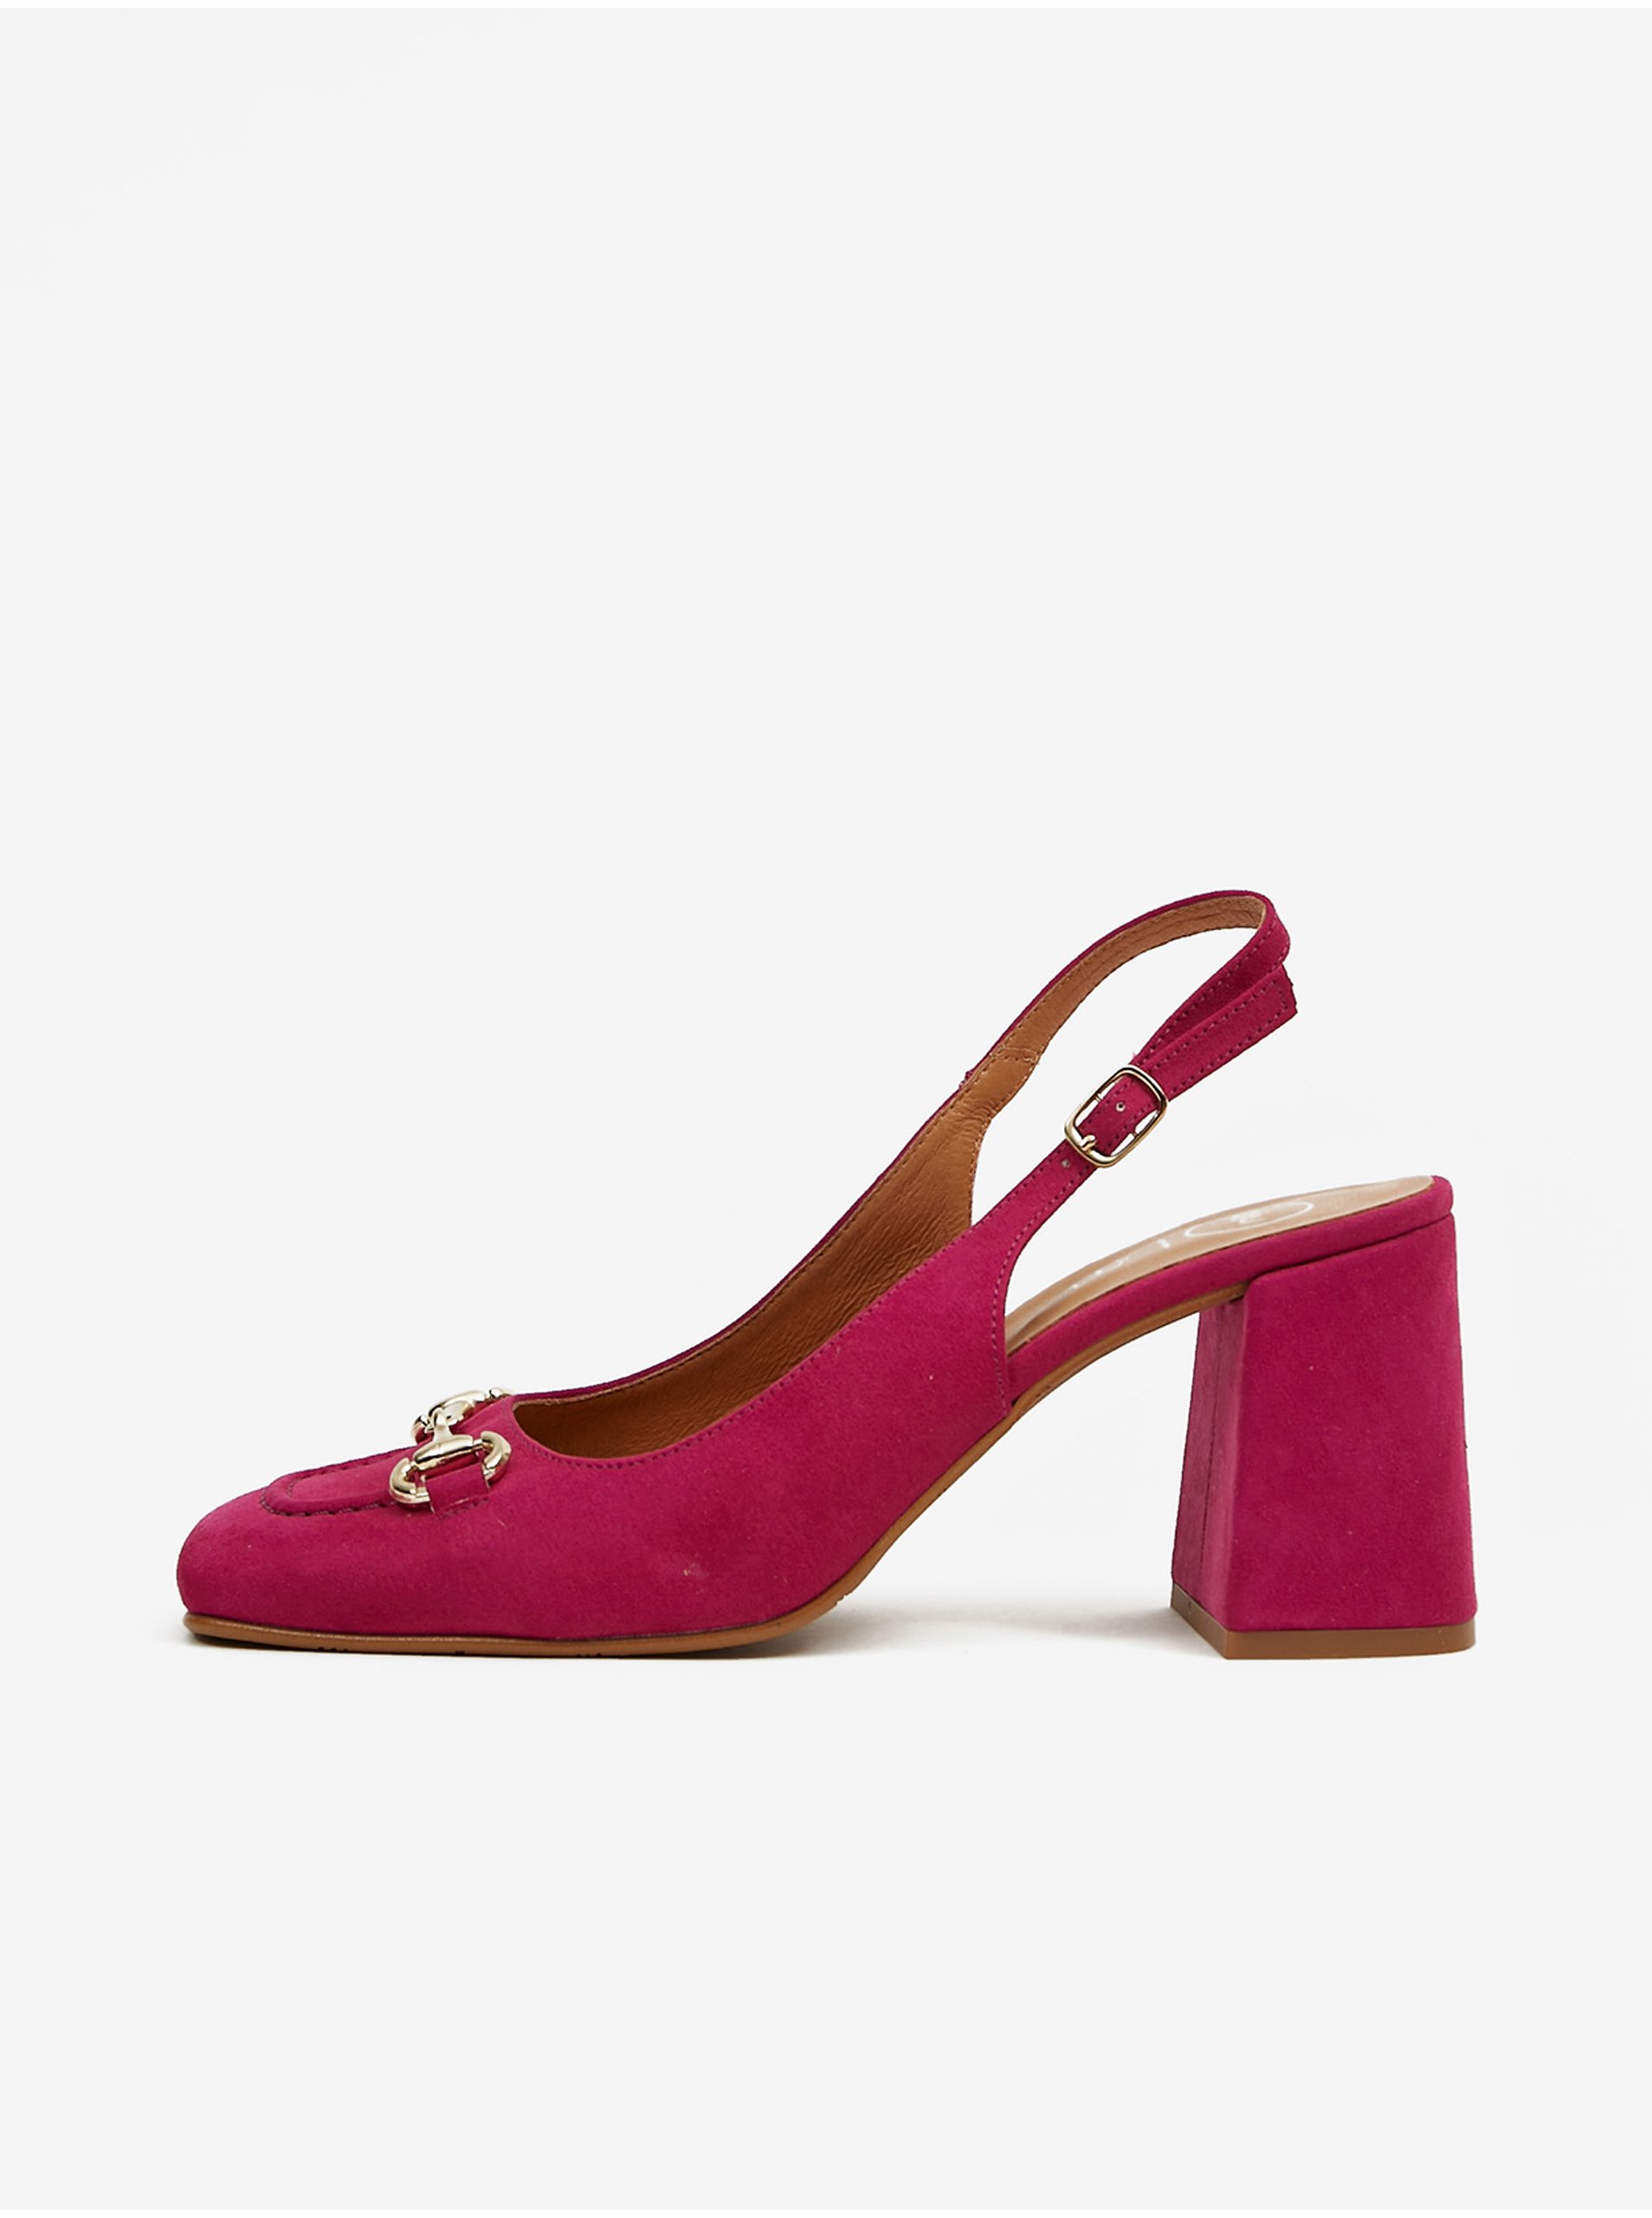 E-shop Tmavě růžové dámské sandály v semišové úpravě na podpatku OJJU